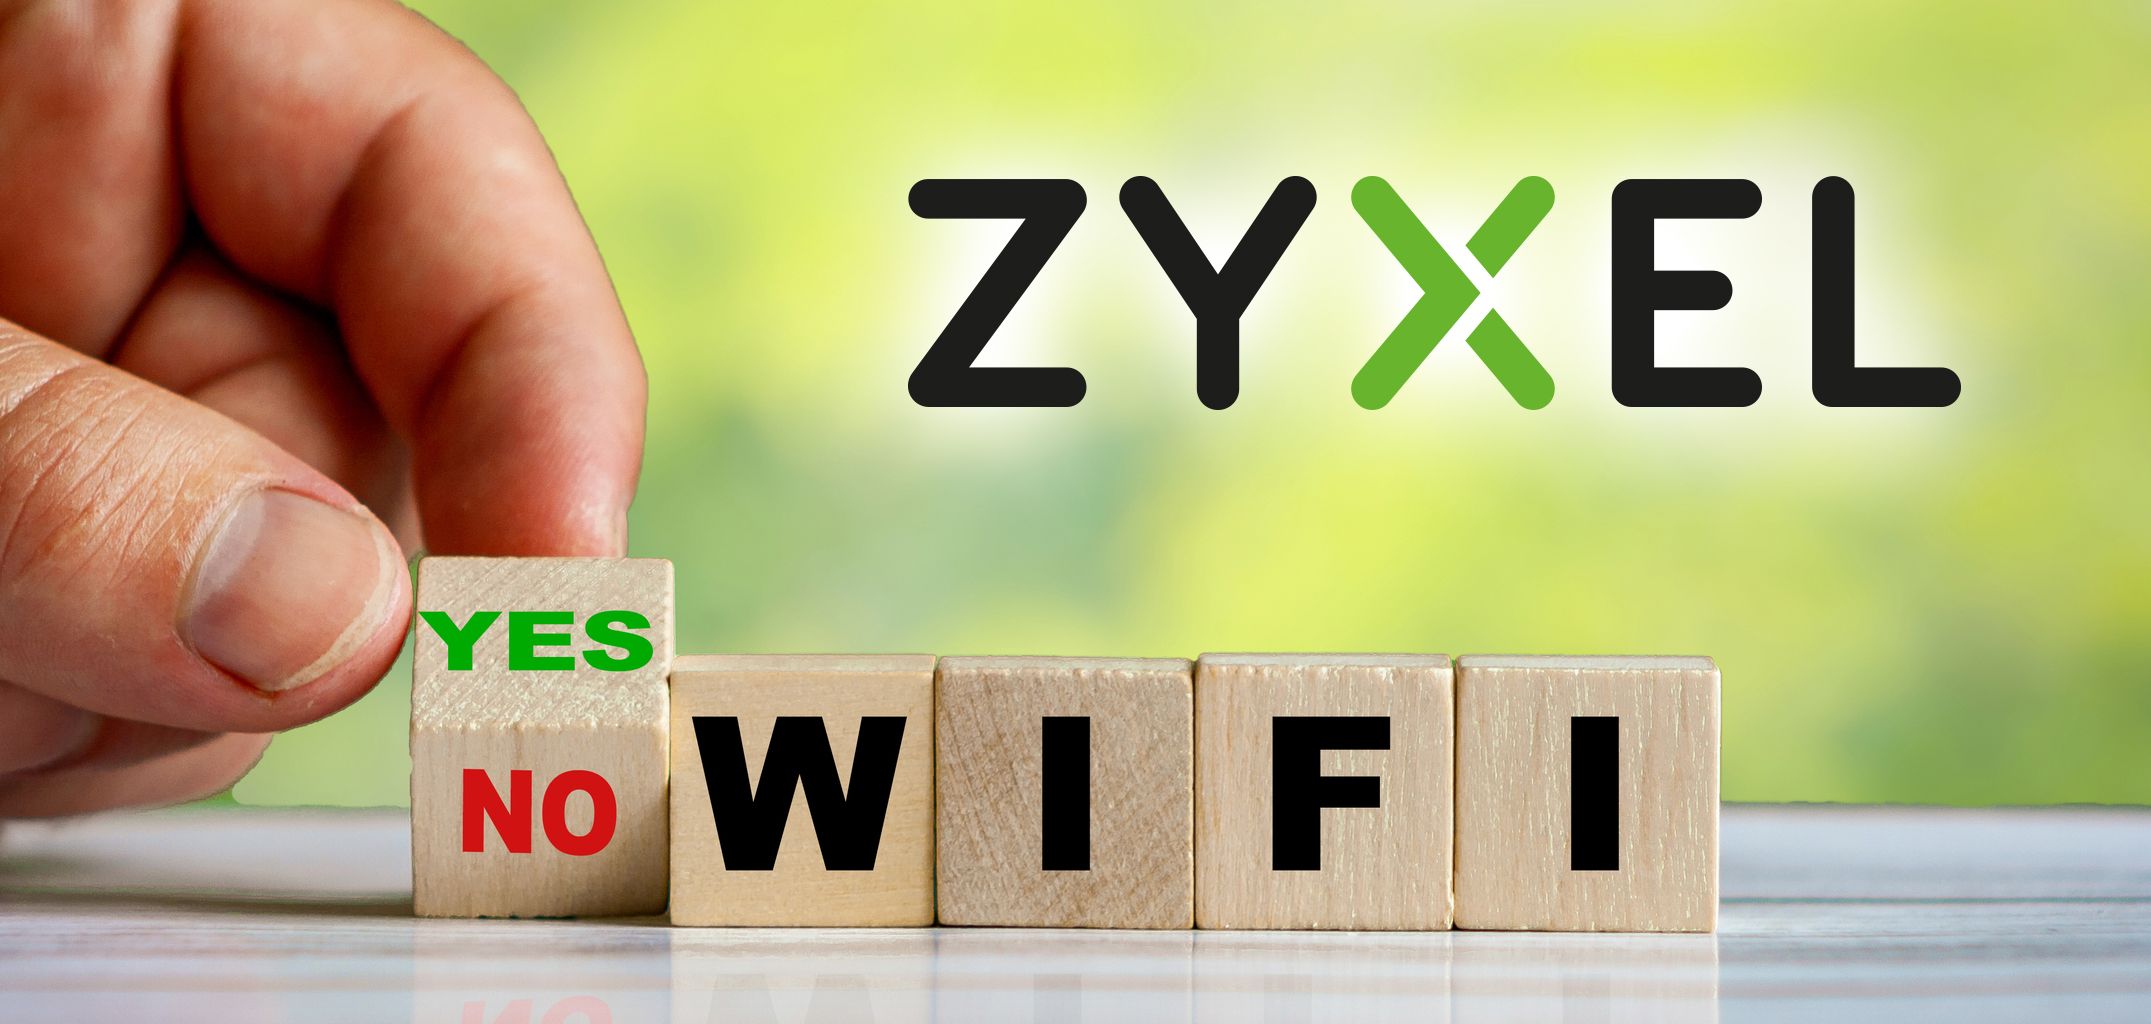 Zyxel Mesh WiFi rendszerek, egységben az erő